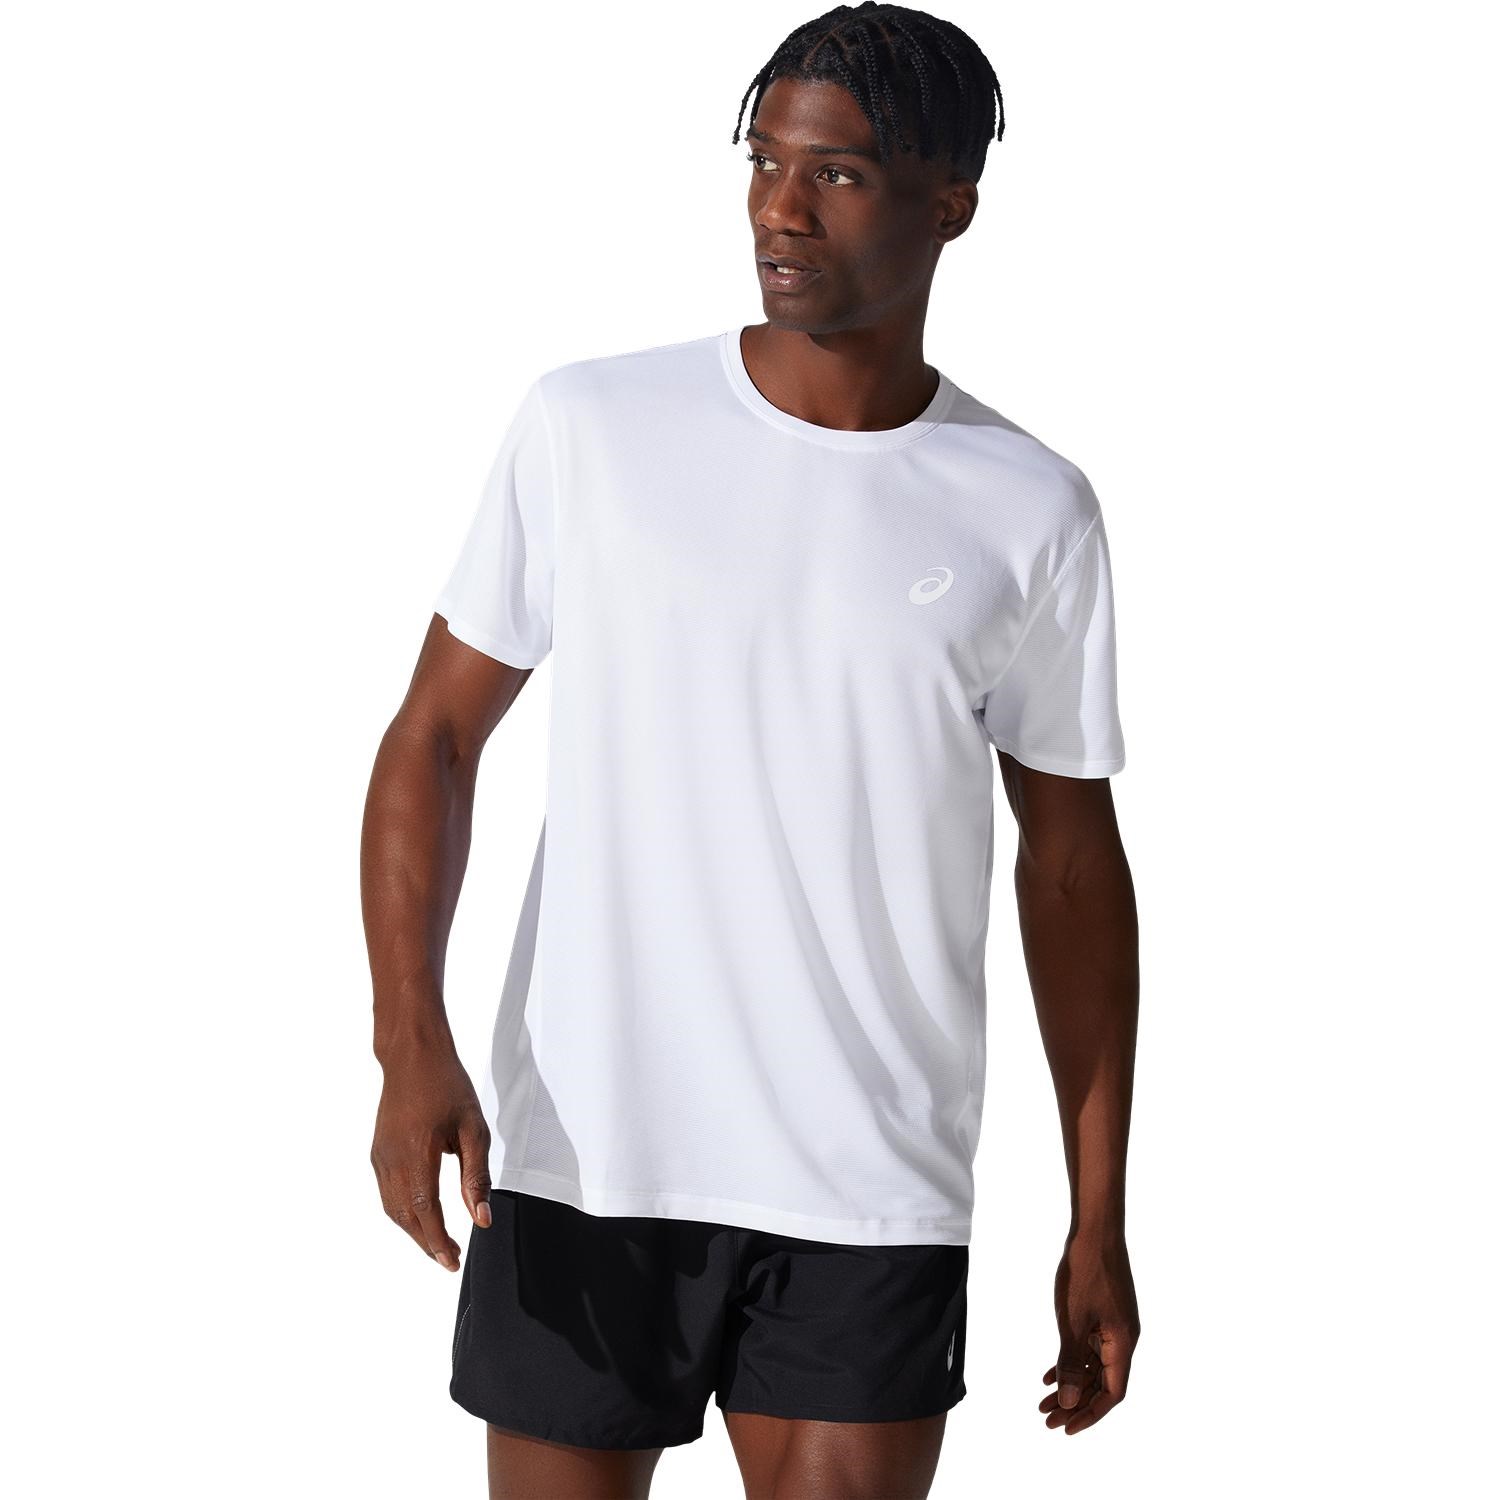 Asics Silver Mens Short Sleeve Running T-Shirt - Brilliant White ...